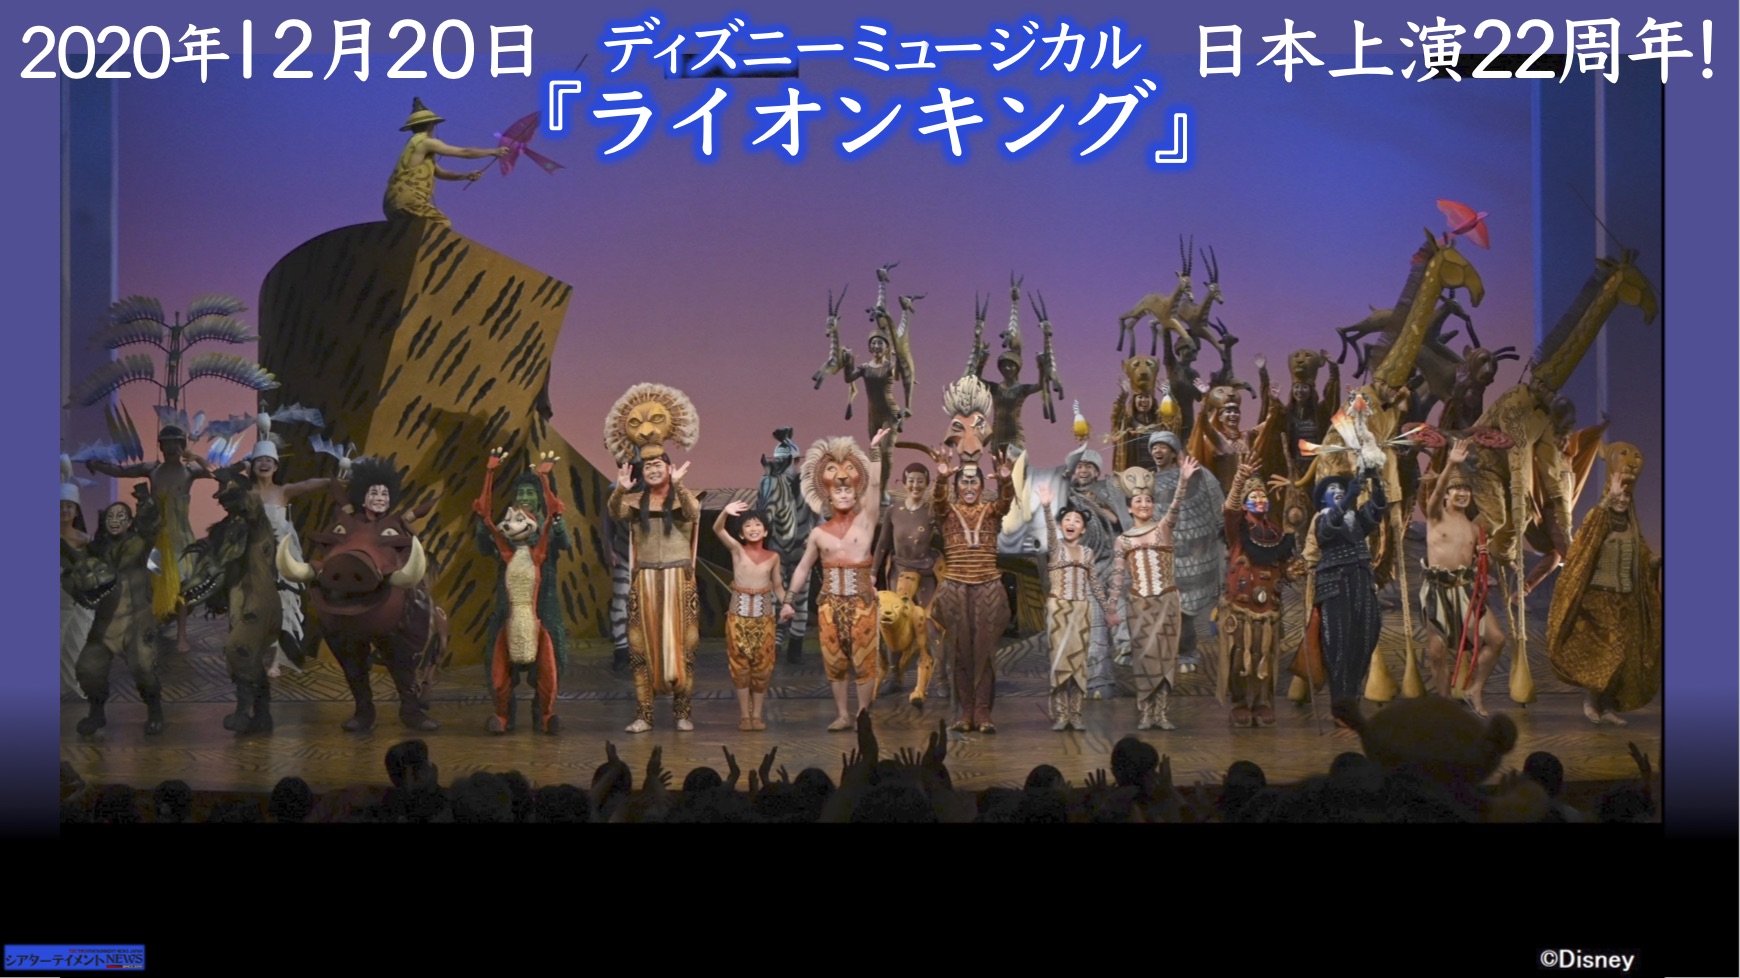 12月 日 ディズニーミュージカル ライオンキング 日本上演22周年 シアターテイメントnews